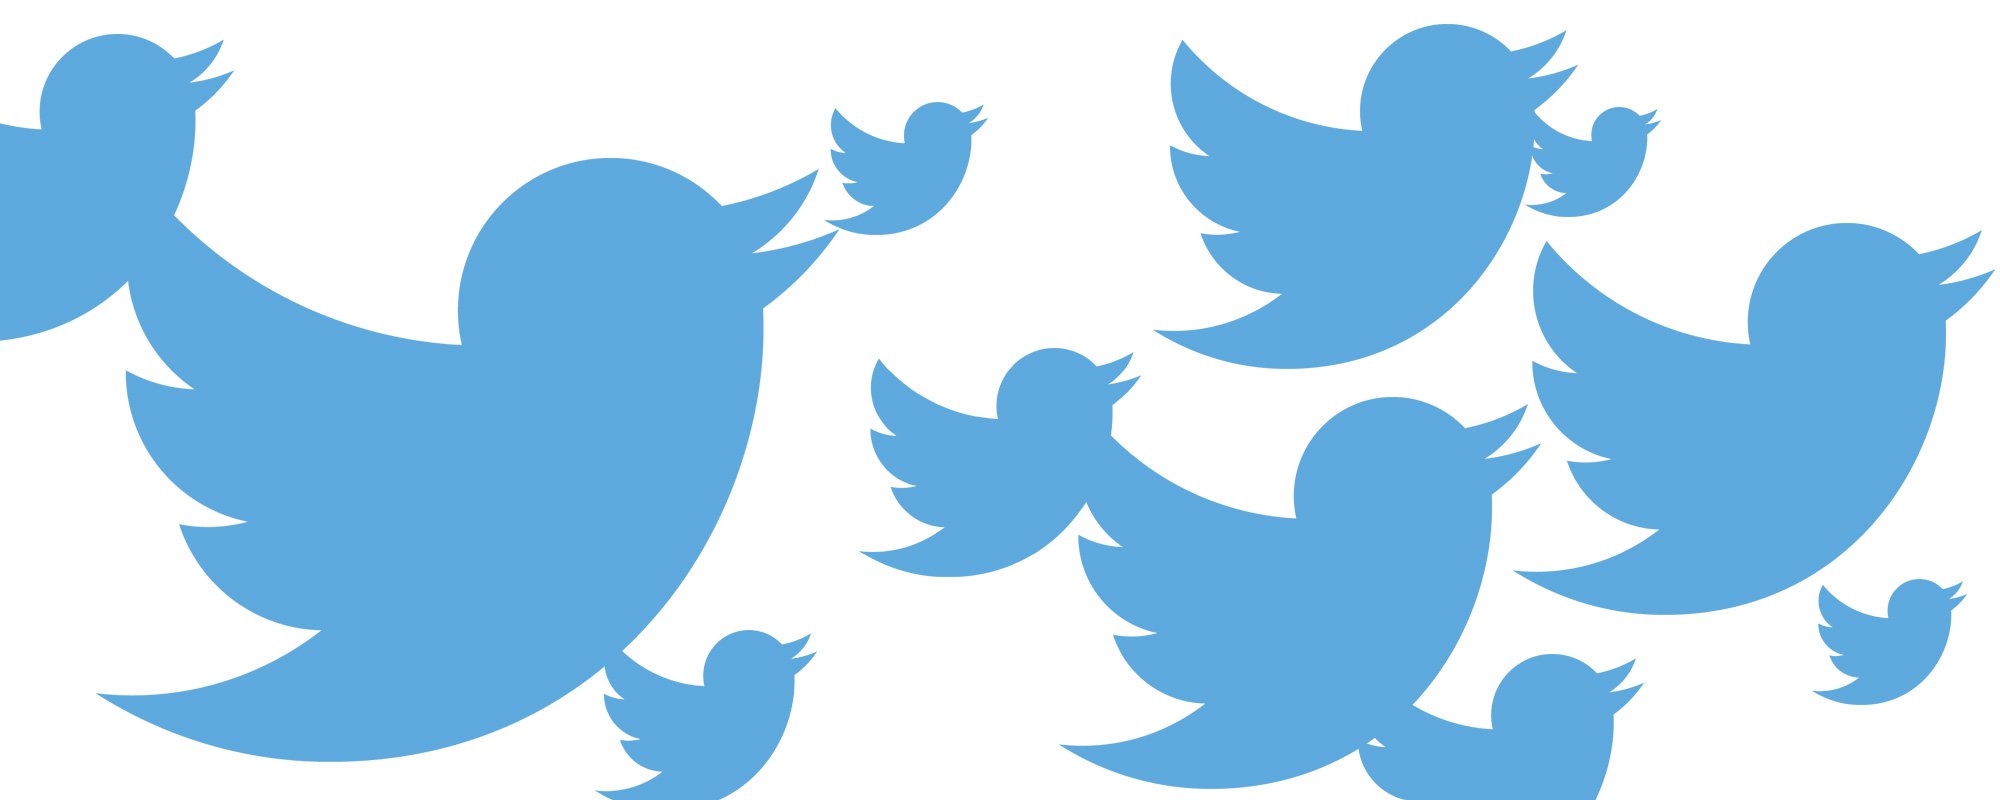 Adgangskoder 336 millioner Twitter-brugere er blevet kompromitteret på grund af en fejl